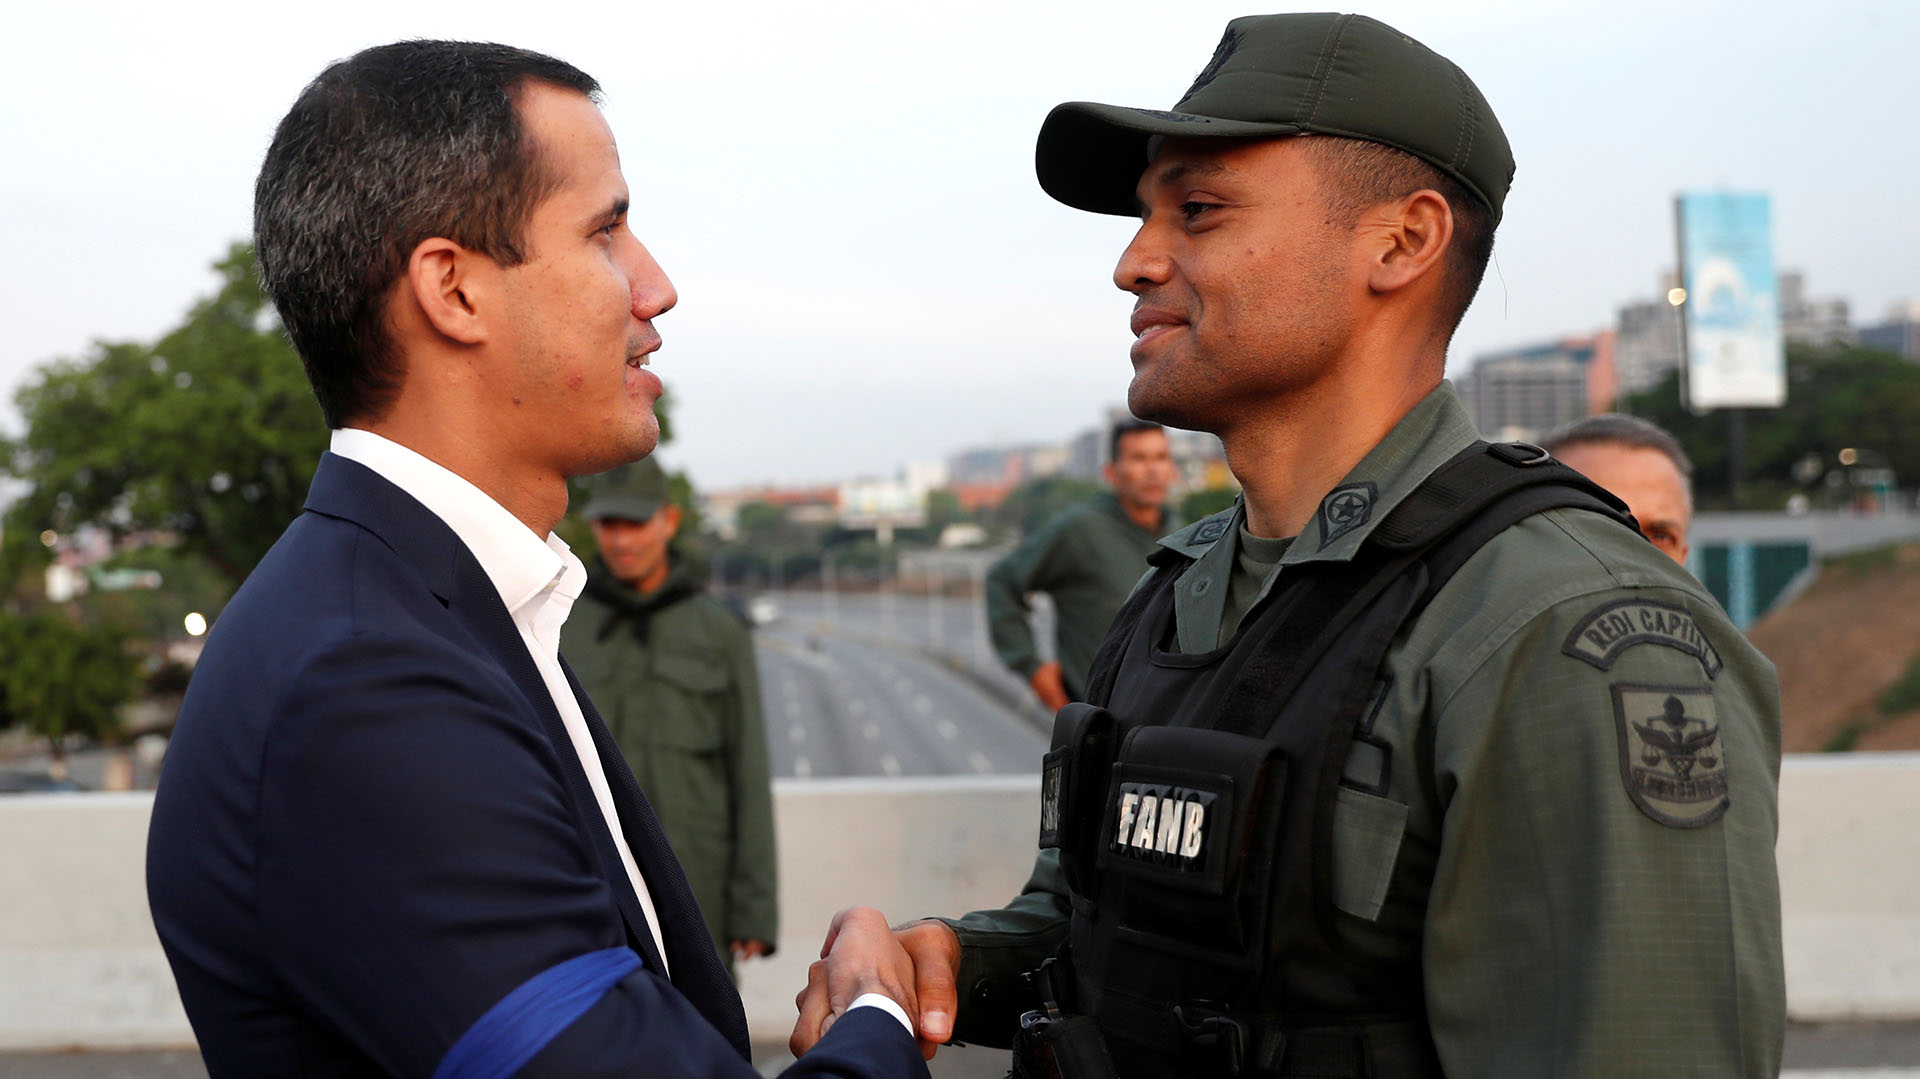 El líder de la oposición venezolana Juan Guaidó da la mano a un militar cerca de la Base Aérea “La Carlota” del Generalísimo Francisco de Miranda, en Caracas, Venezuela, el 30 de abril de 2019. REUTERS/Carlos Garcia Rawlins